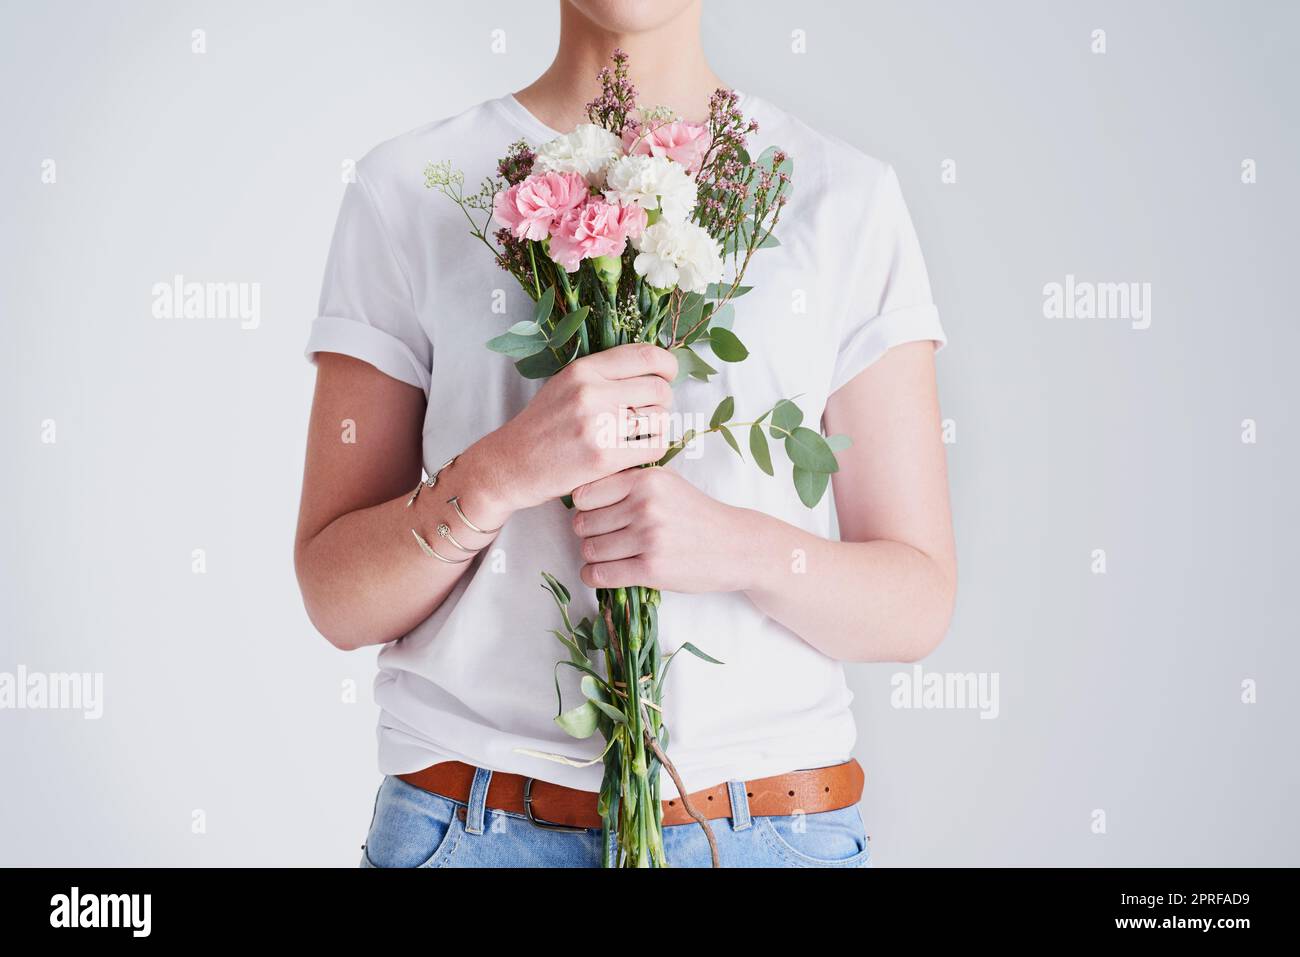 Ich möchte mich wie die Blumen frei fühlen. Studioaufnahme einer nicht erkennbaren Frau, die einen Blumenstrauß vor einem grauen Hintergrund hält. Stockfoto